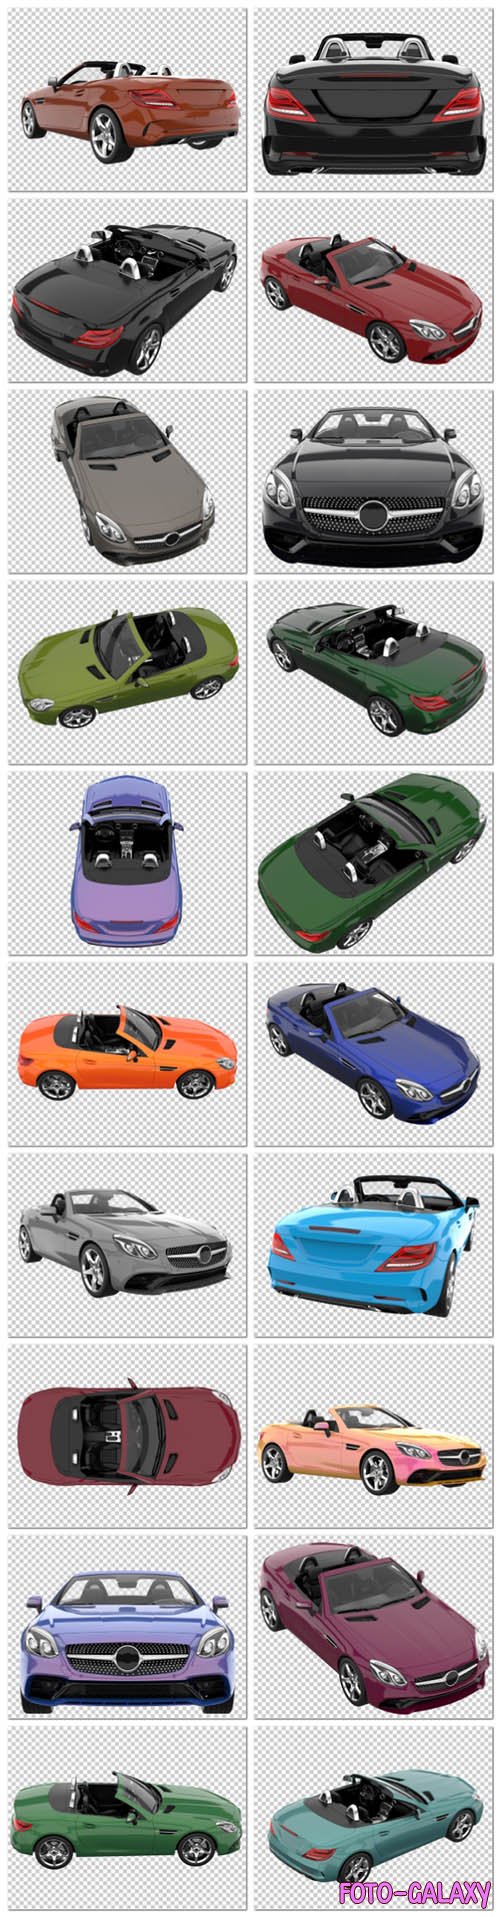 20 Sport car on transparent background, 3d rendering - illustration in psd vol 2